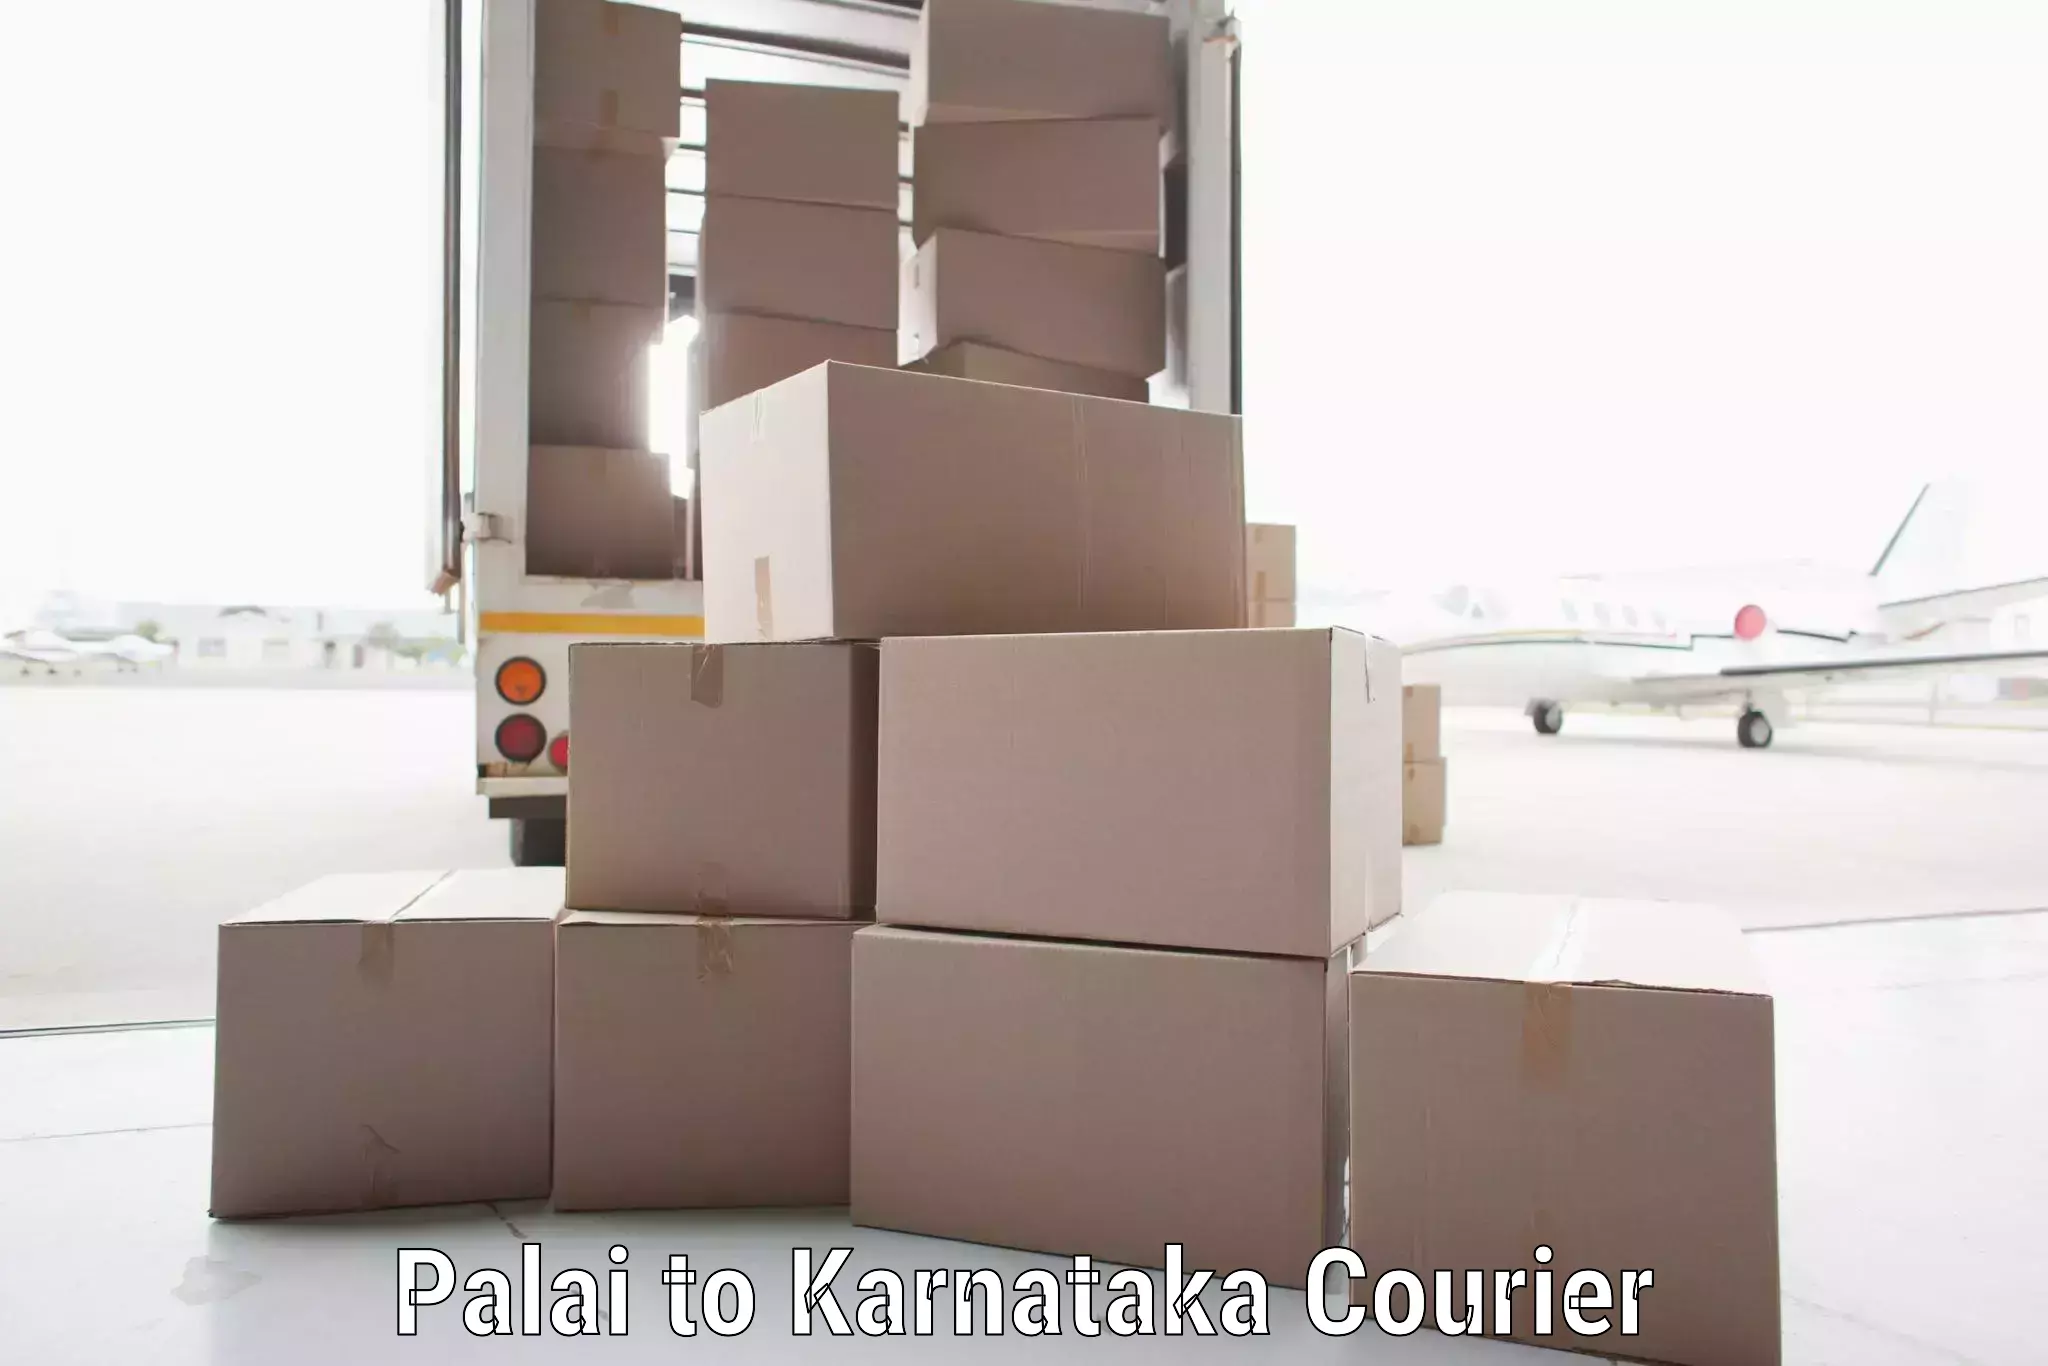 International parcel service Palai to Bangarapet